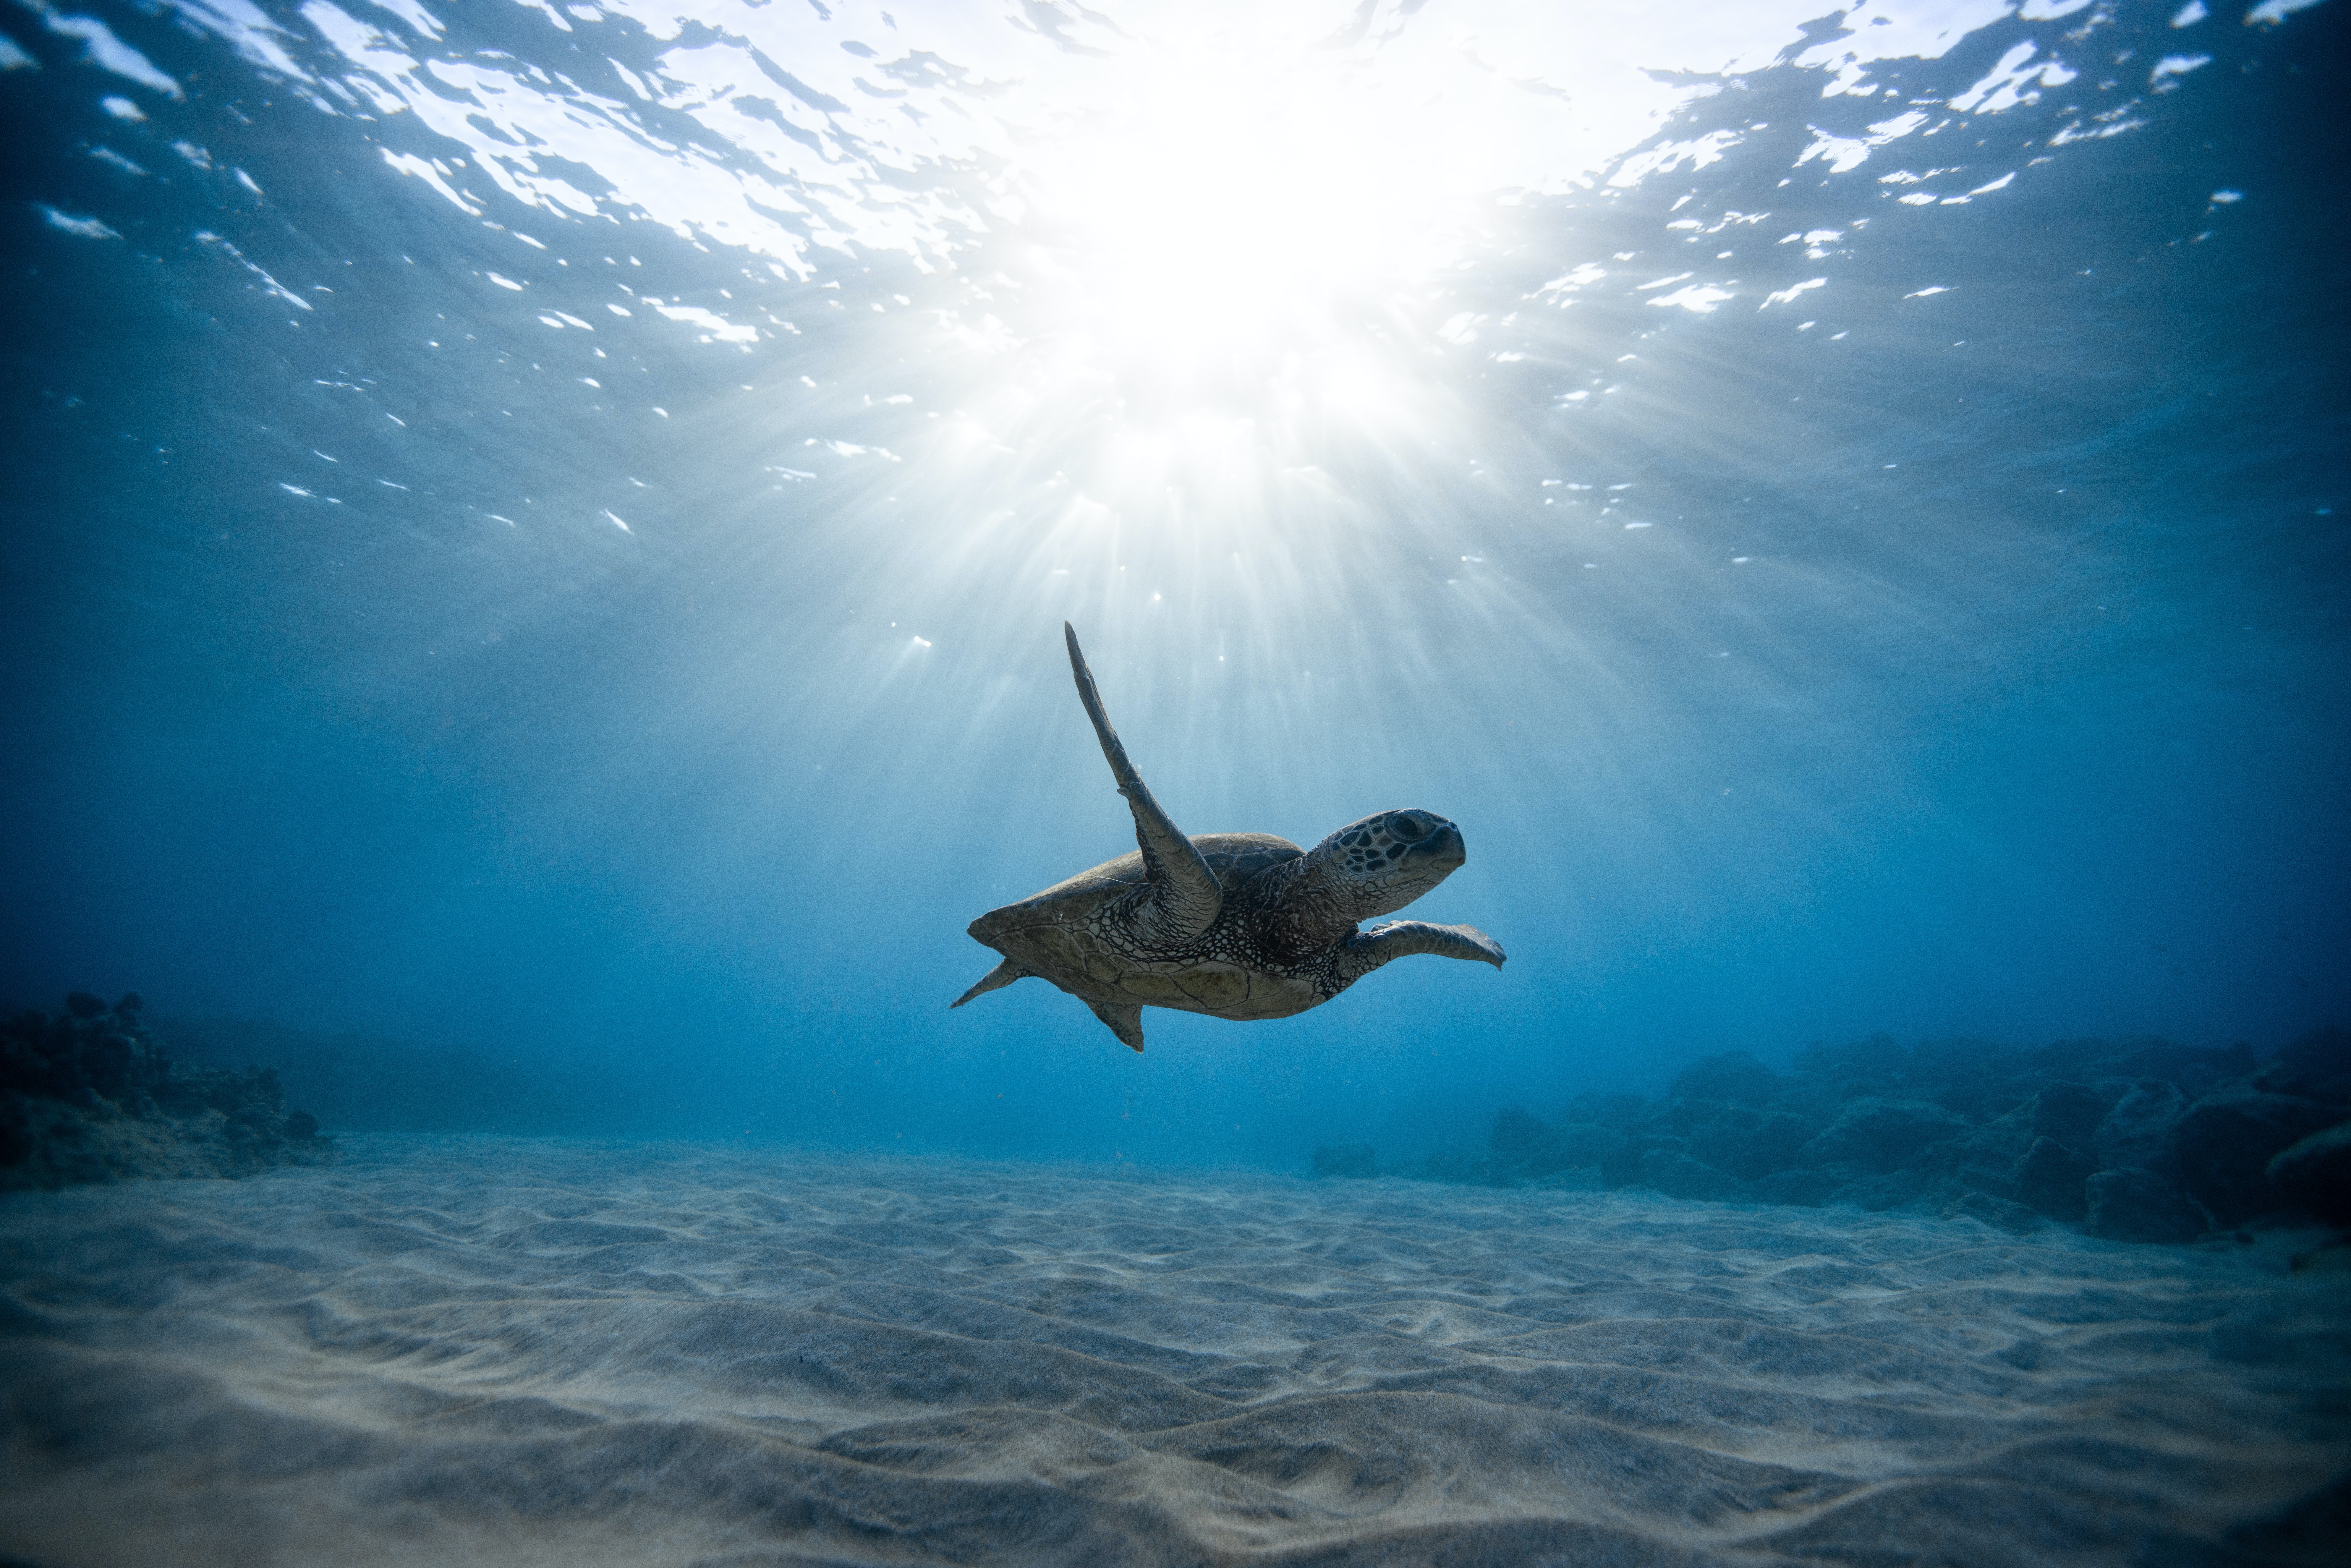 Underwater Photo, Download Free Underwater & HD Image